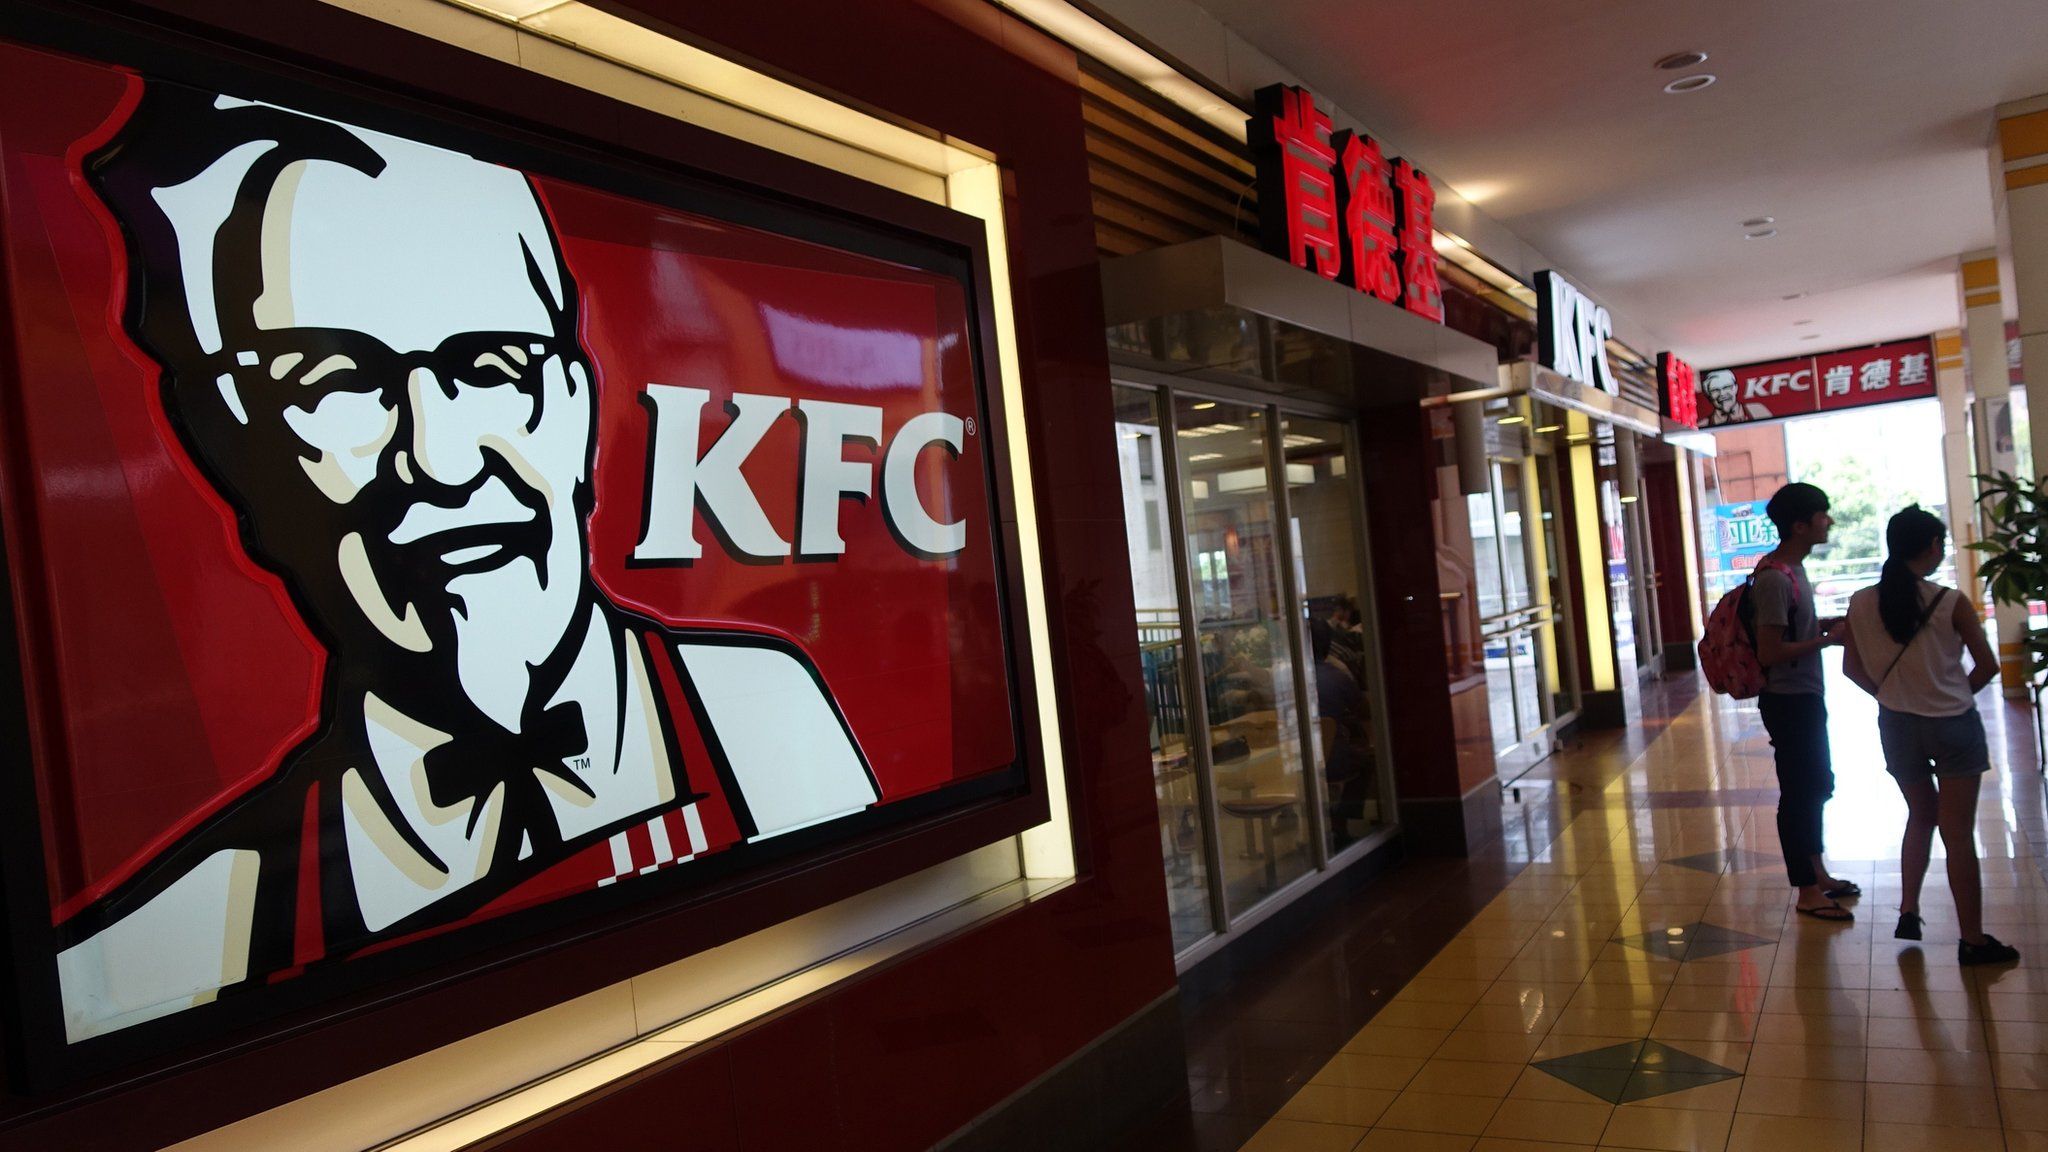 KFC restaurant in China